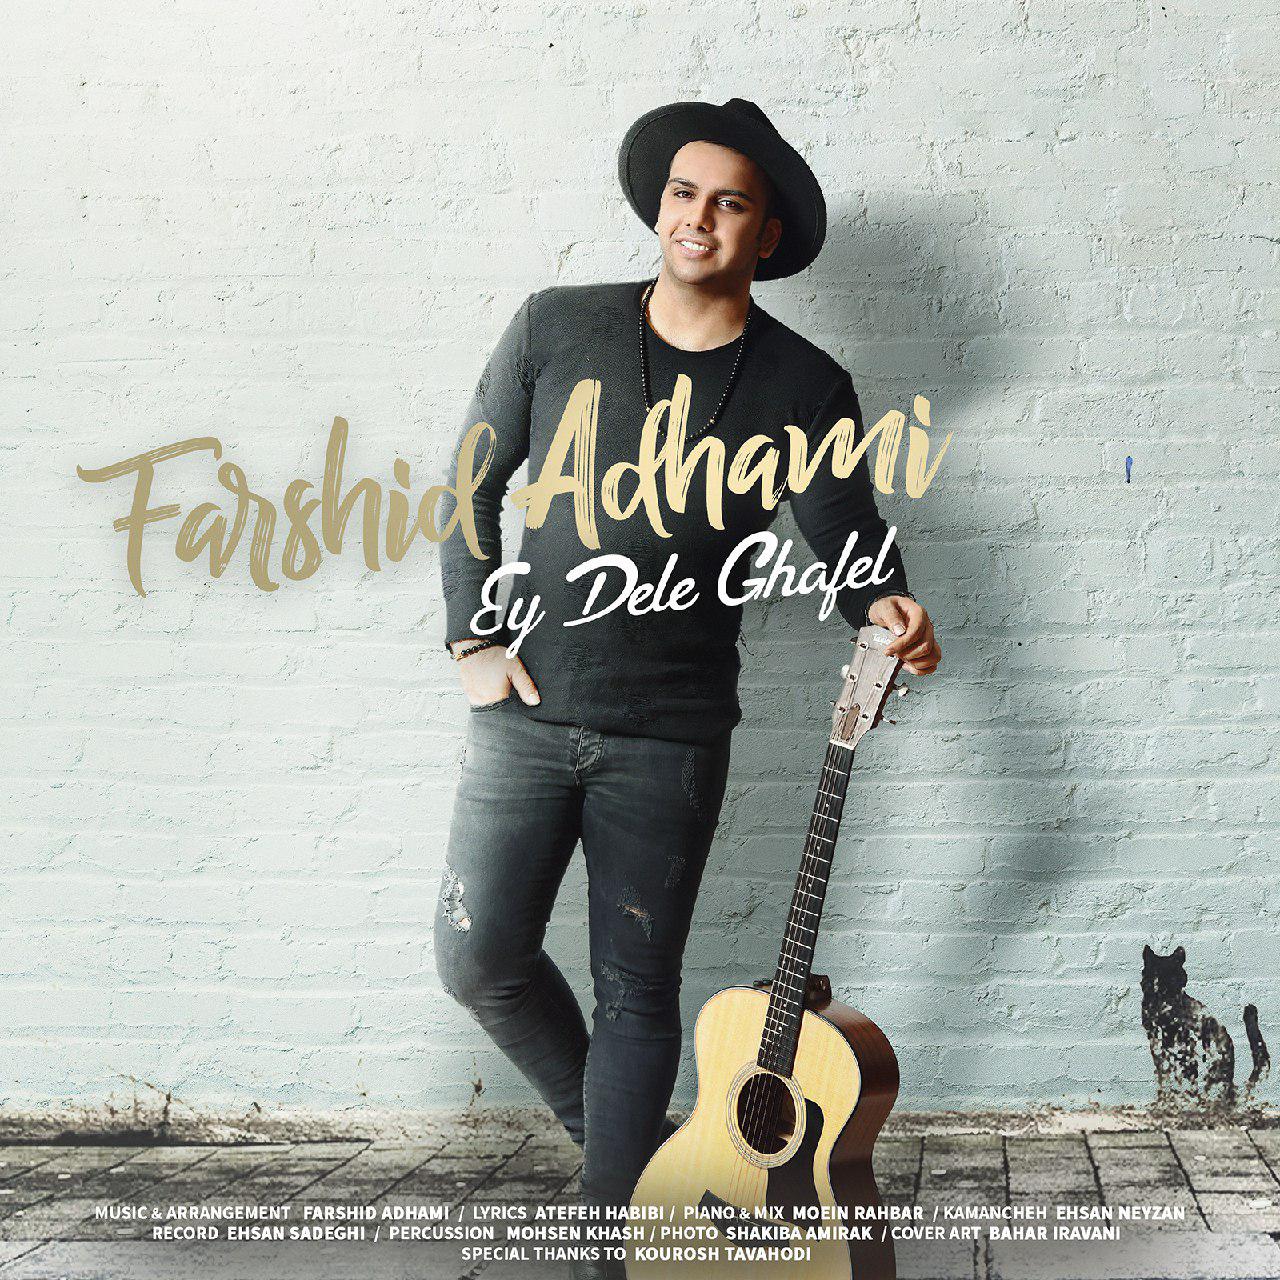  دانلود آهنگ جدید فرشید ادهمی - ای دل غافل | Download New Music By Farshid Adhami - Ey Dele Ghafel